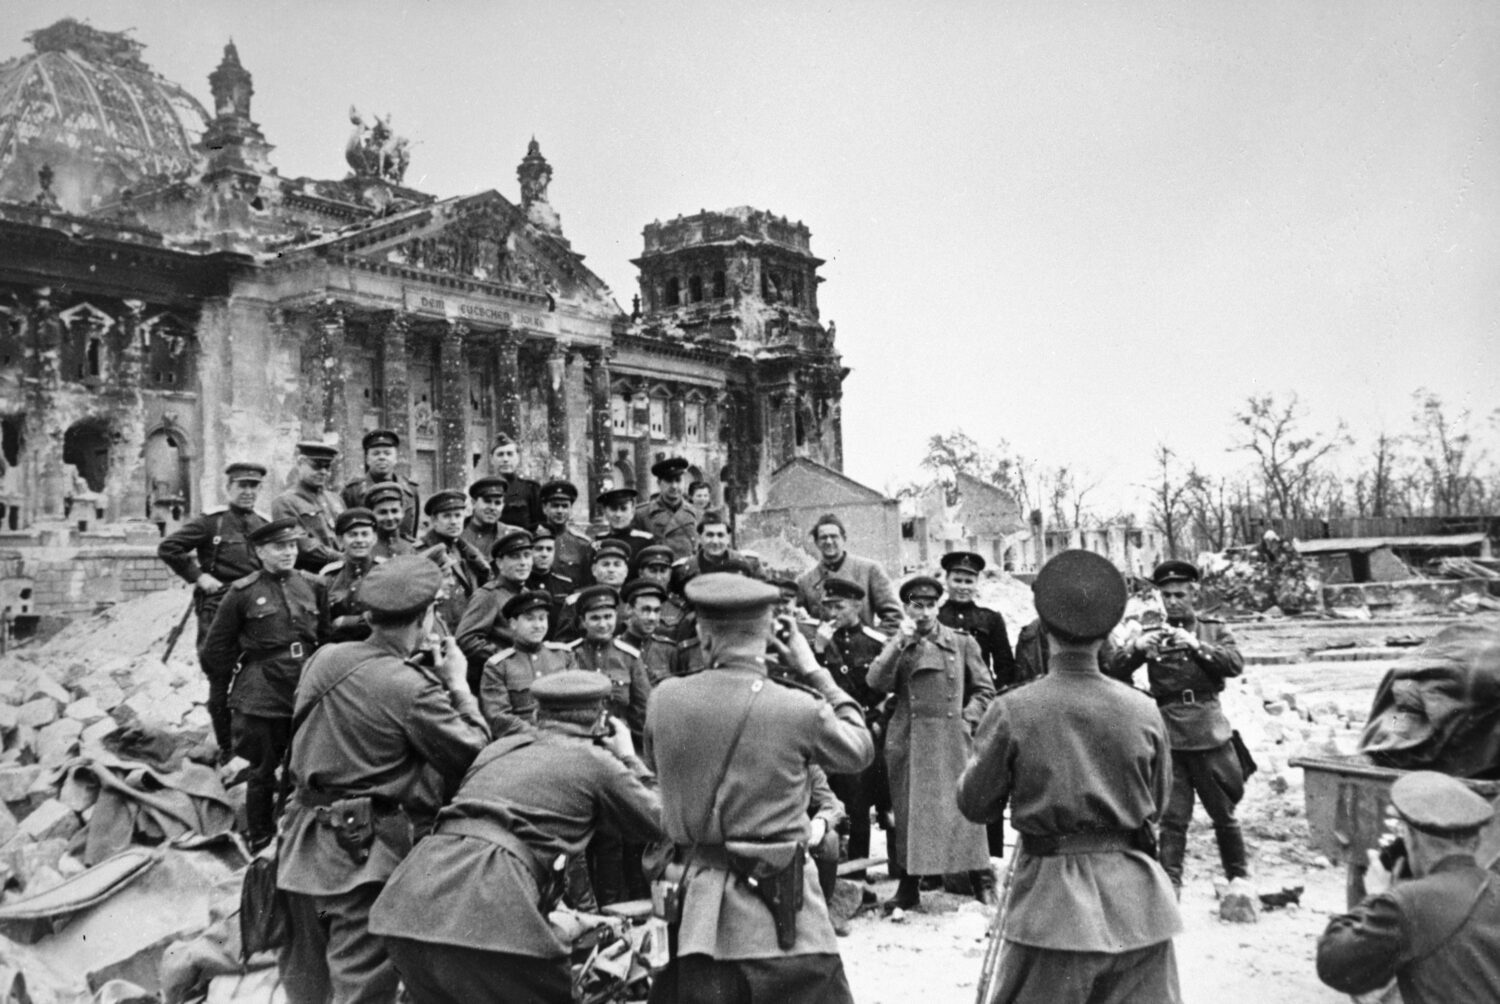 2 мая 1945 года взятие берлина фото